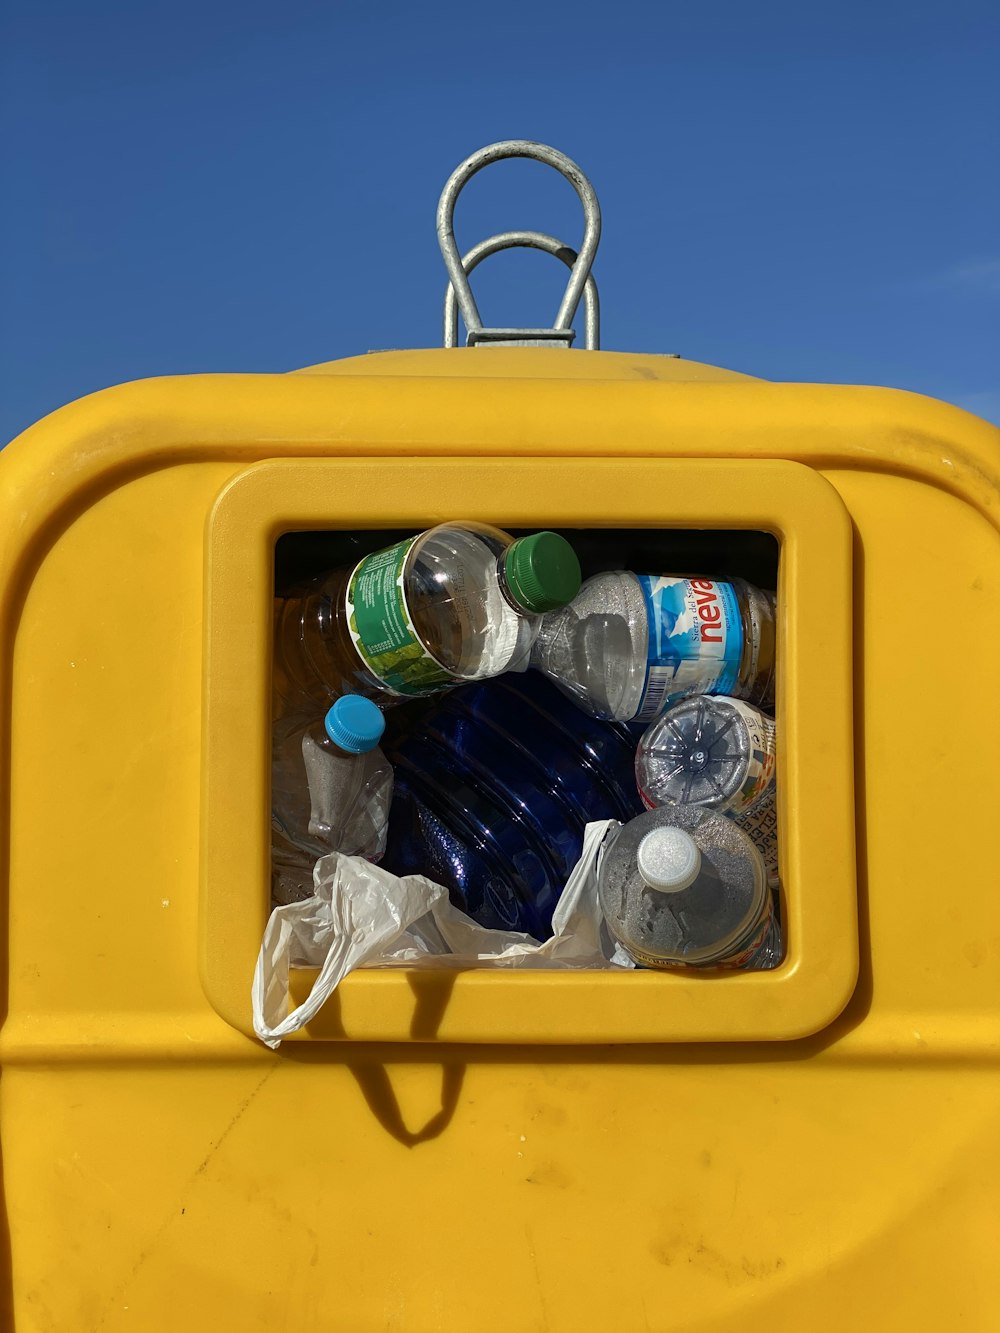 bouteilles en plastique transparent dans un récipient en plastique jaune